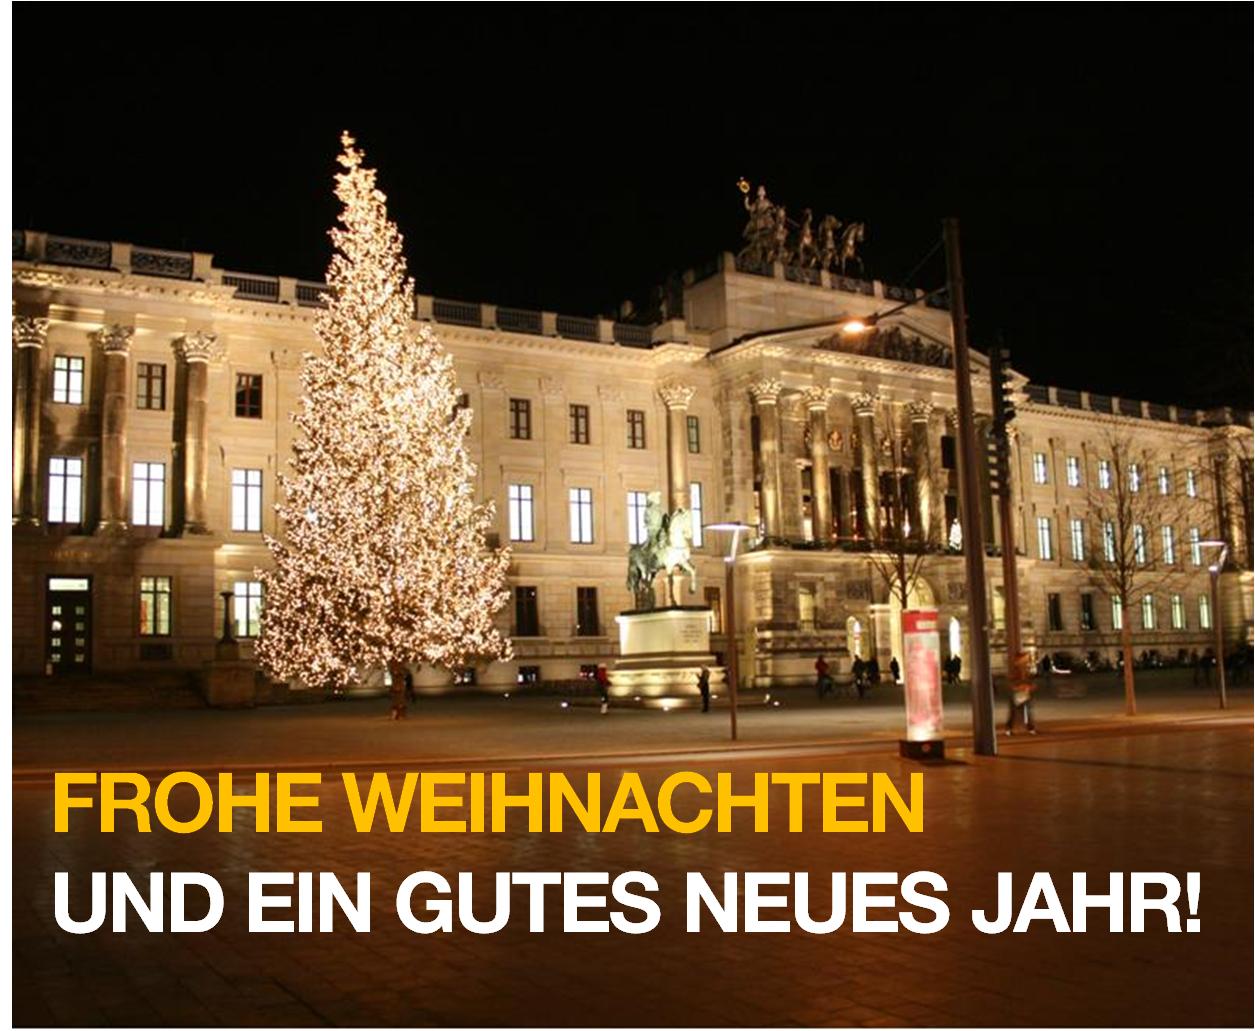 Das Braunschweiger Residenzschloss in weihnachtlicher Stimmung. Aufgenommen von S. Nickel.